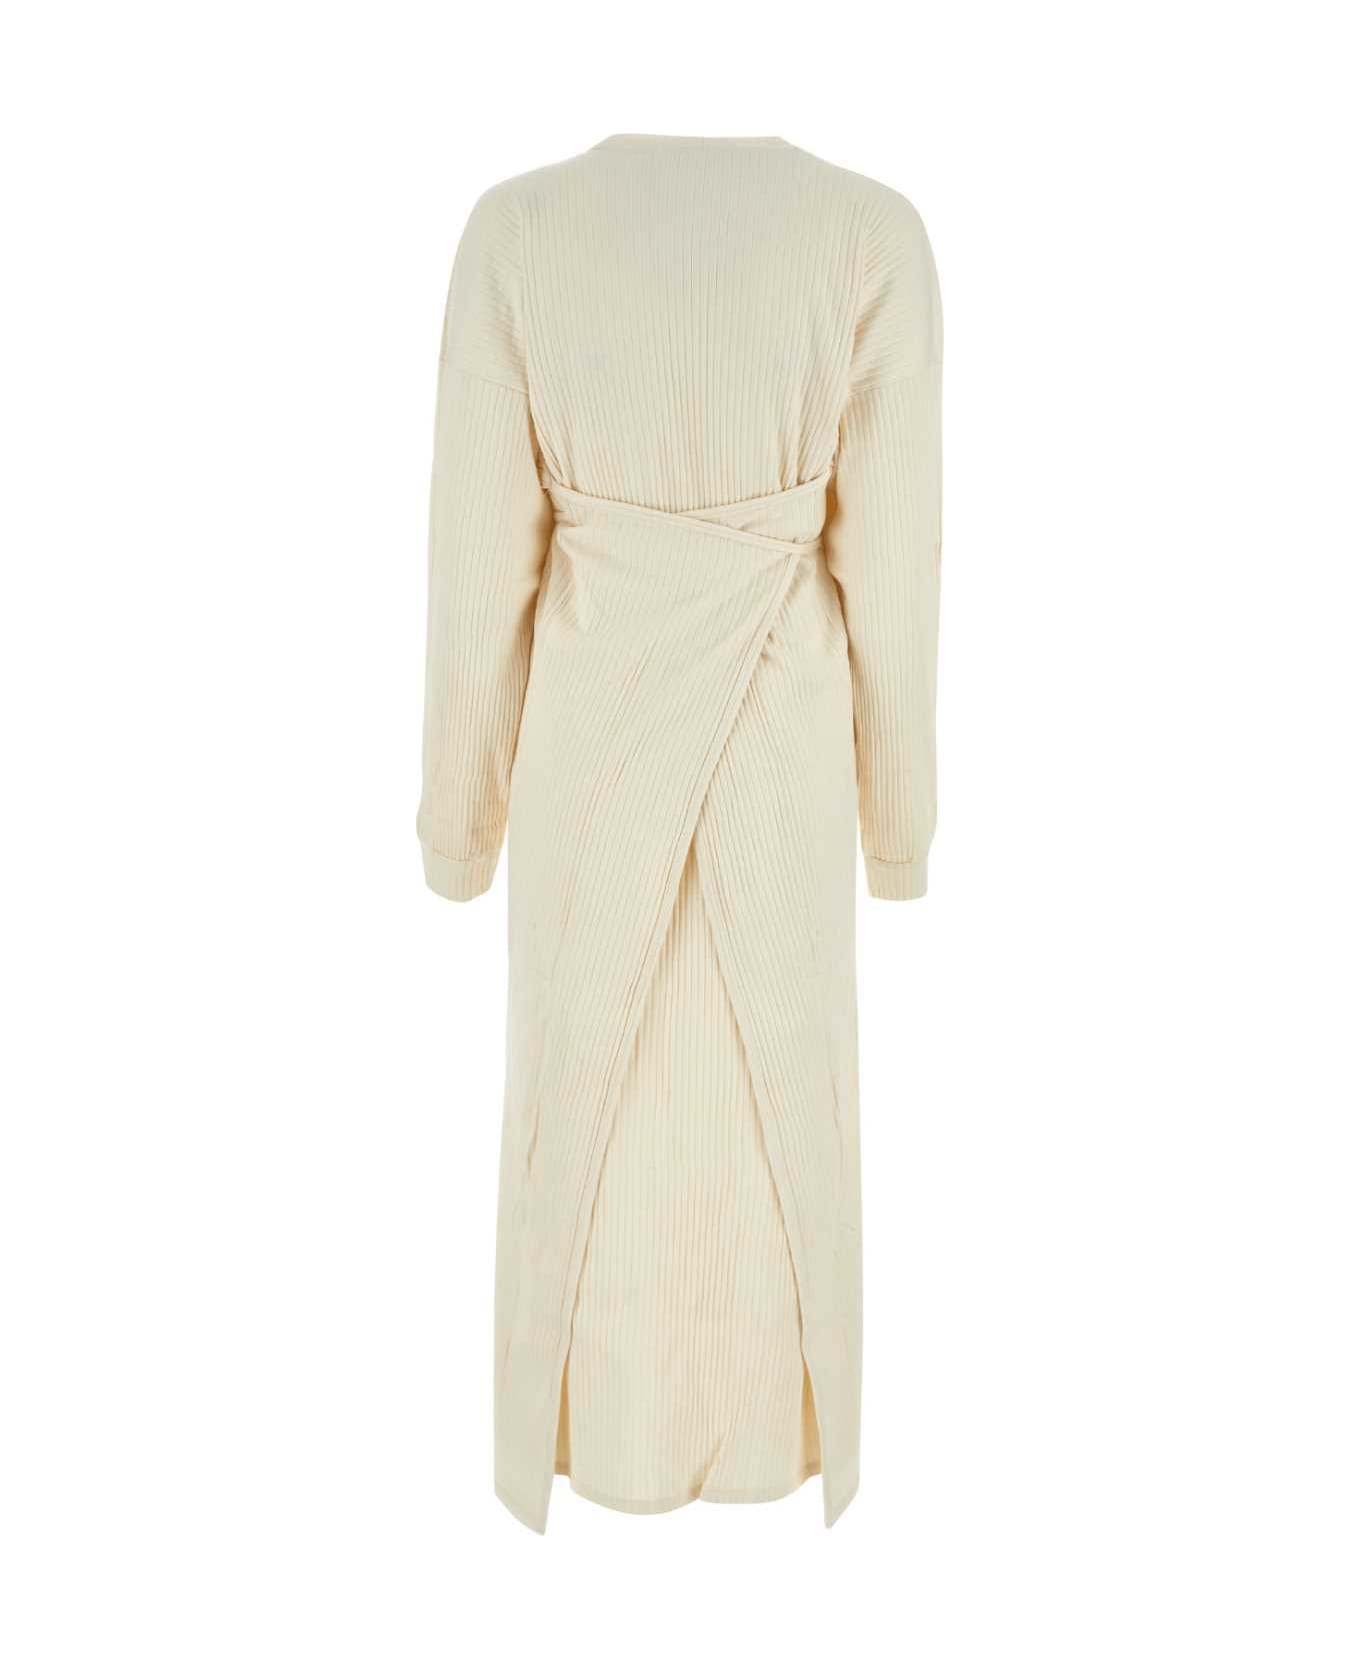 Baserange Ivory Cotton Dress - OFFWHITE